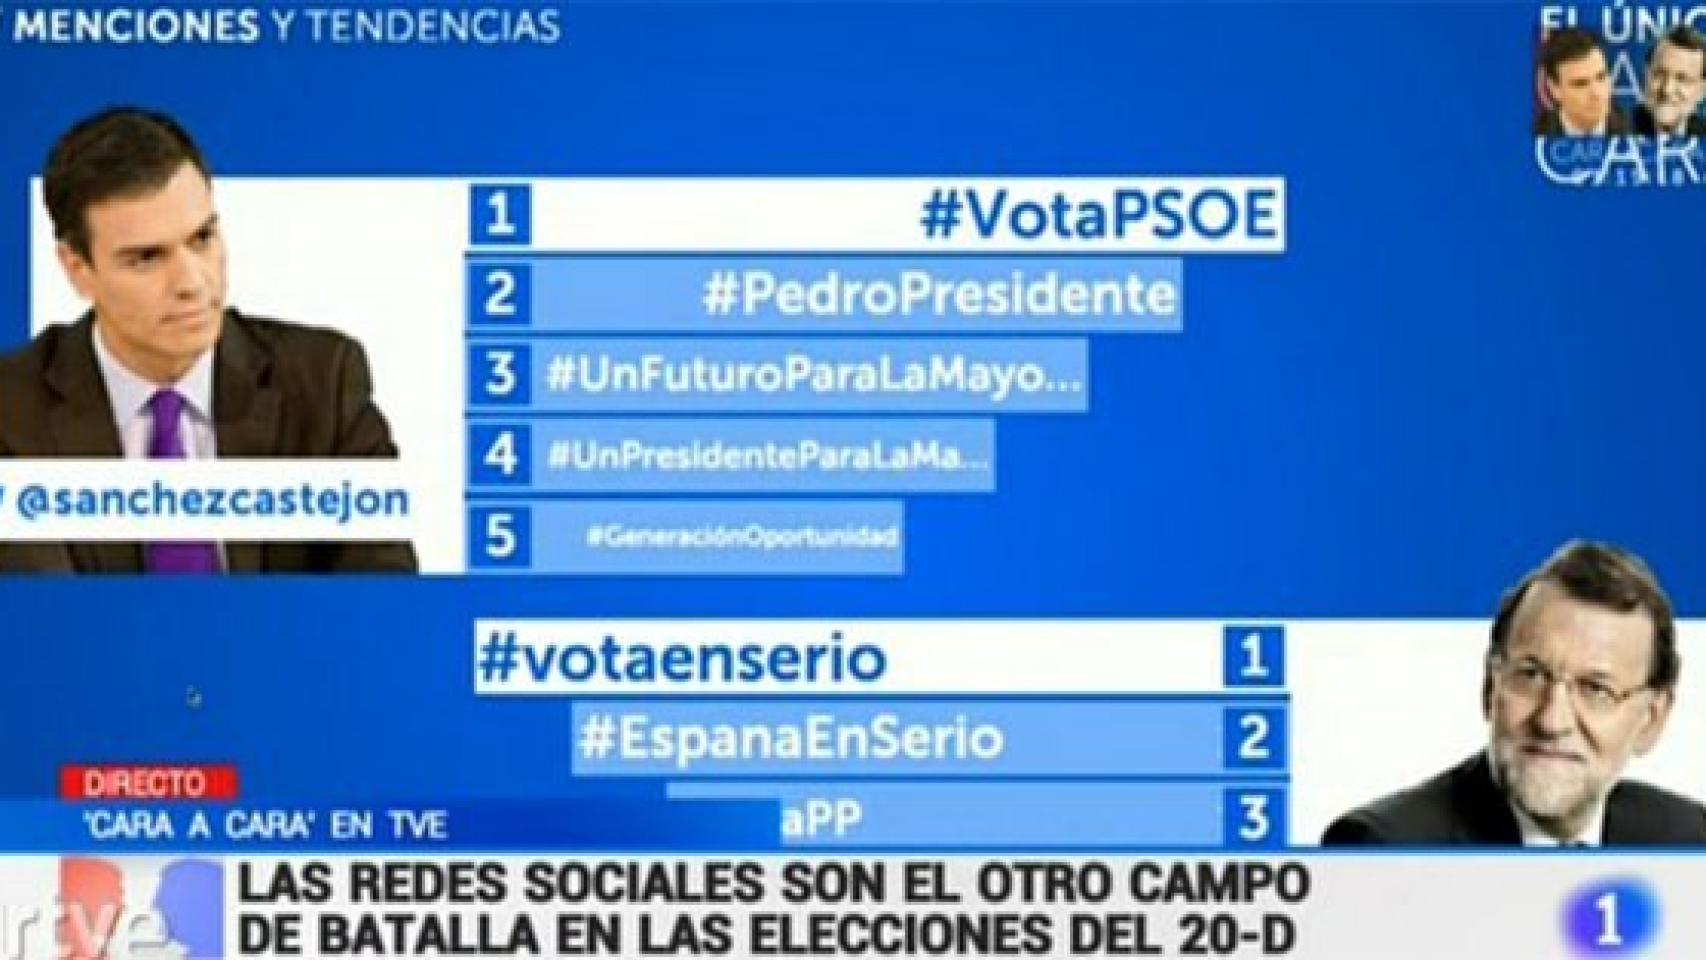 Podemos y Ciudadanos no existen para TVE en el cara a cara Rajoy-Sánchez